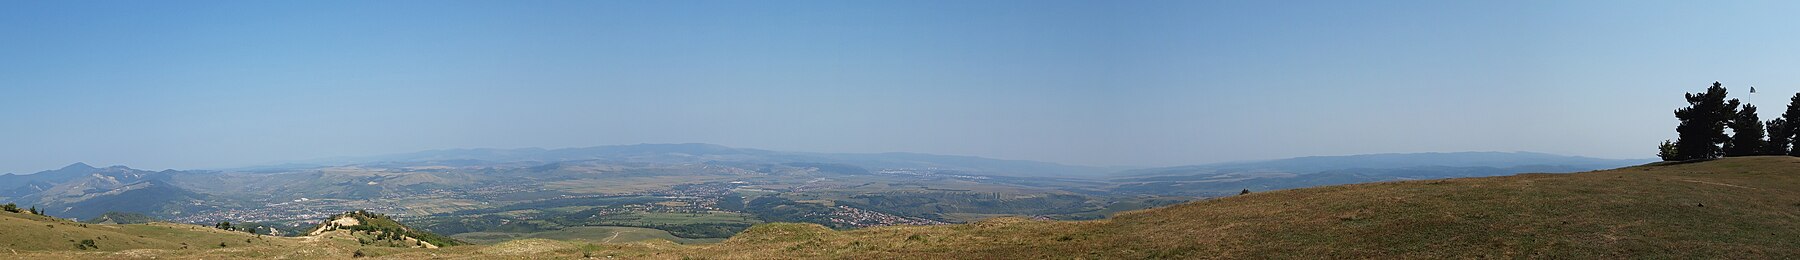 Panorama de pe dealul Cosna.jpg